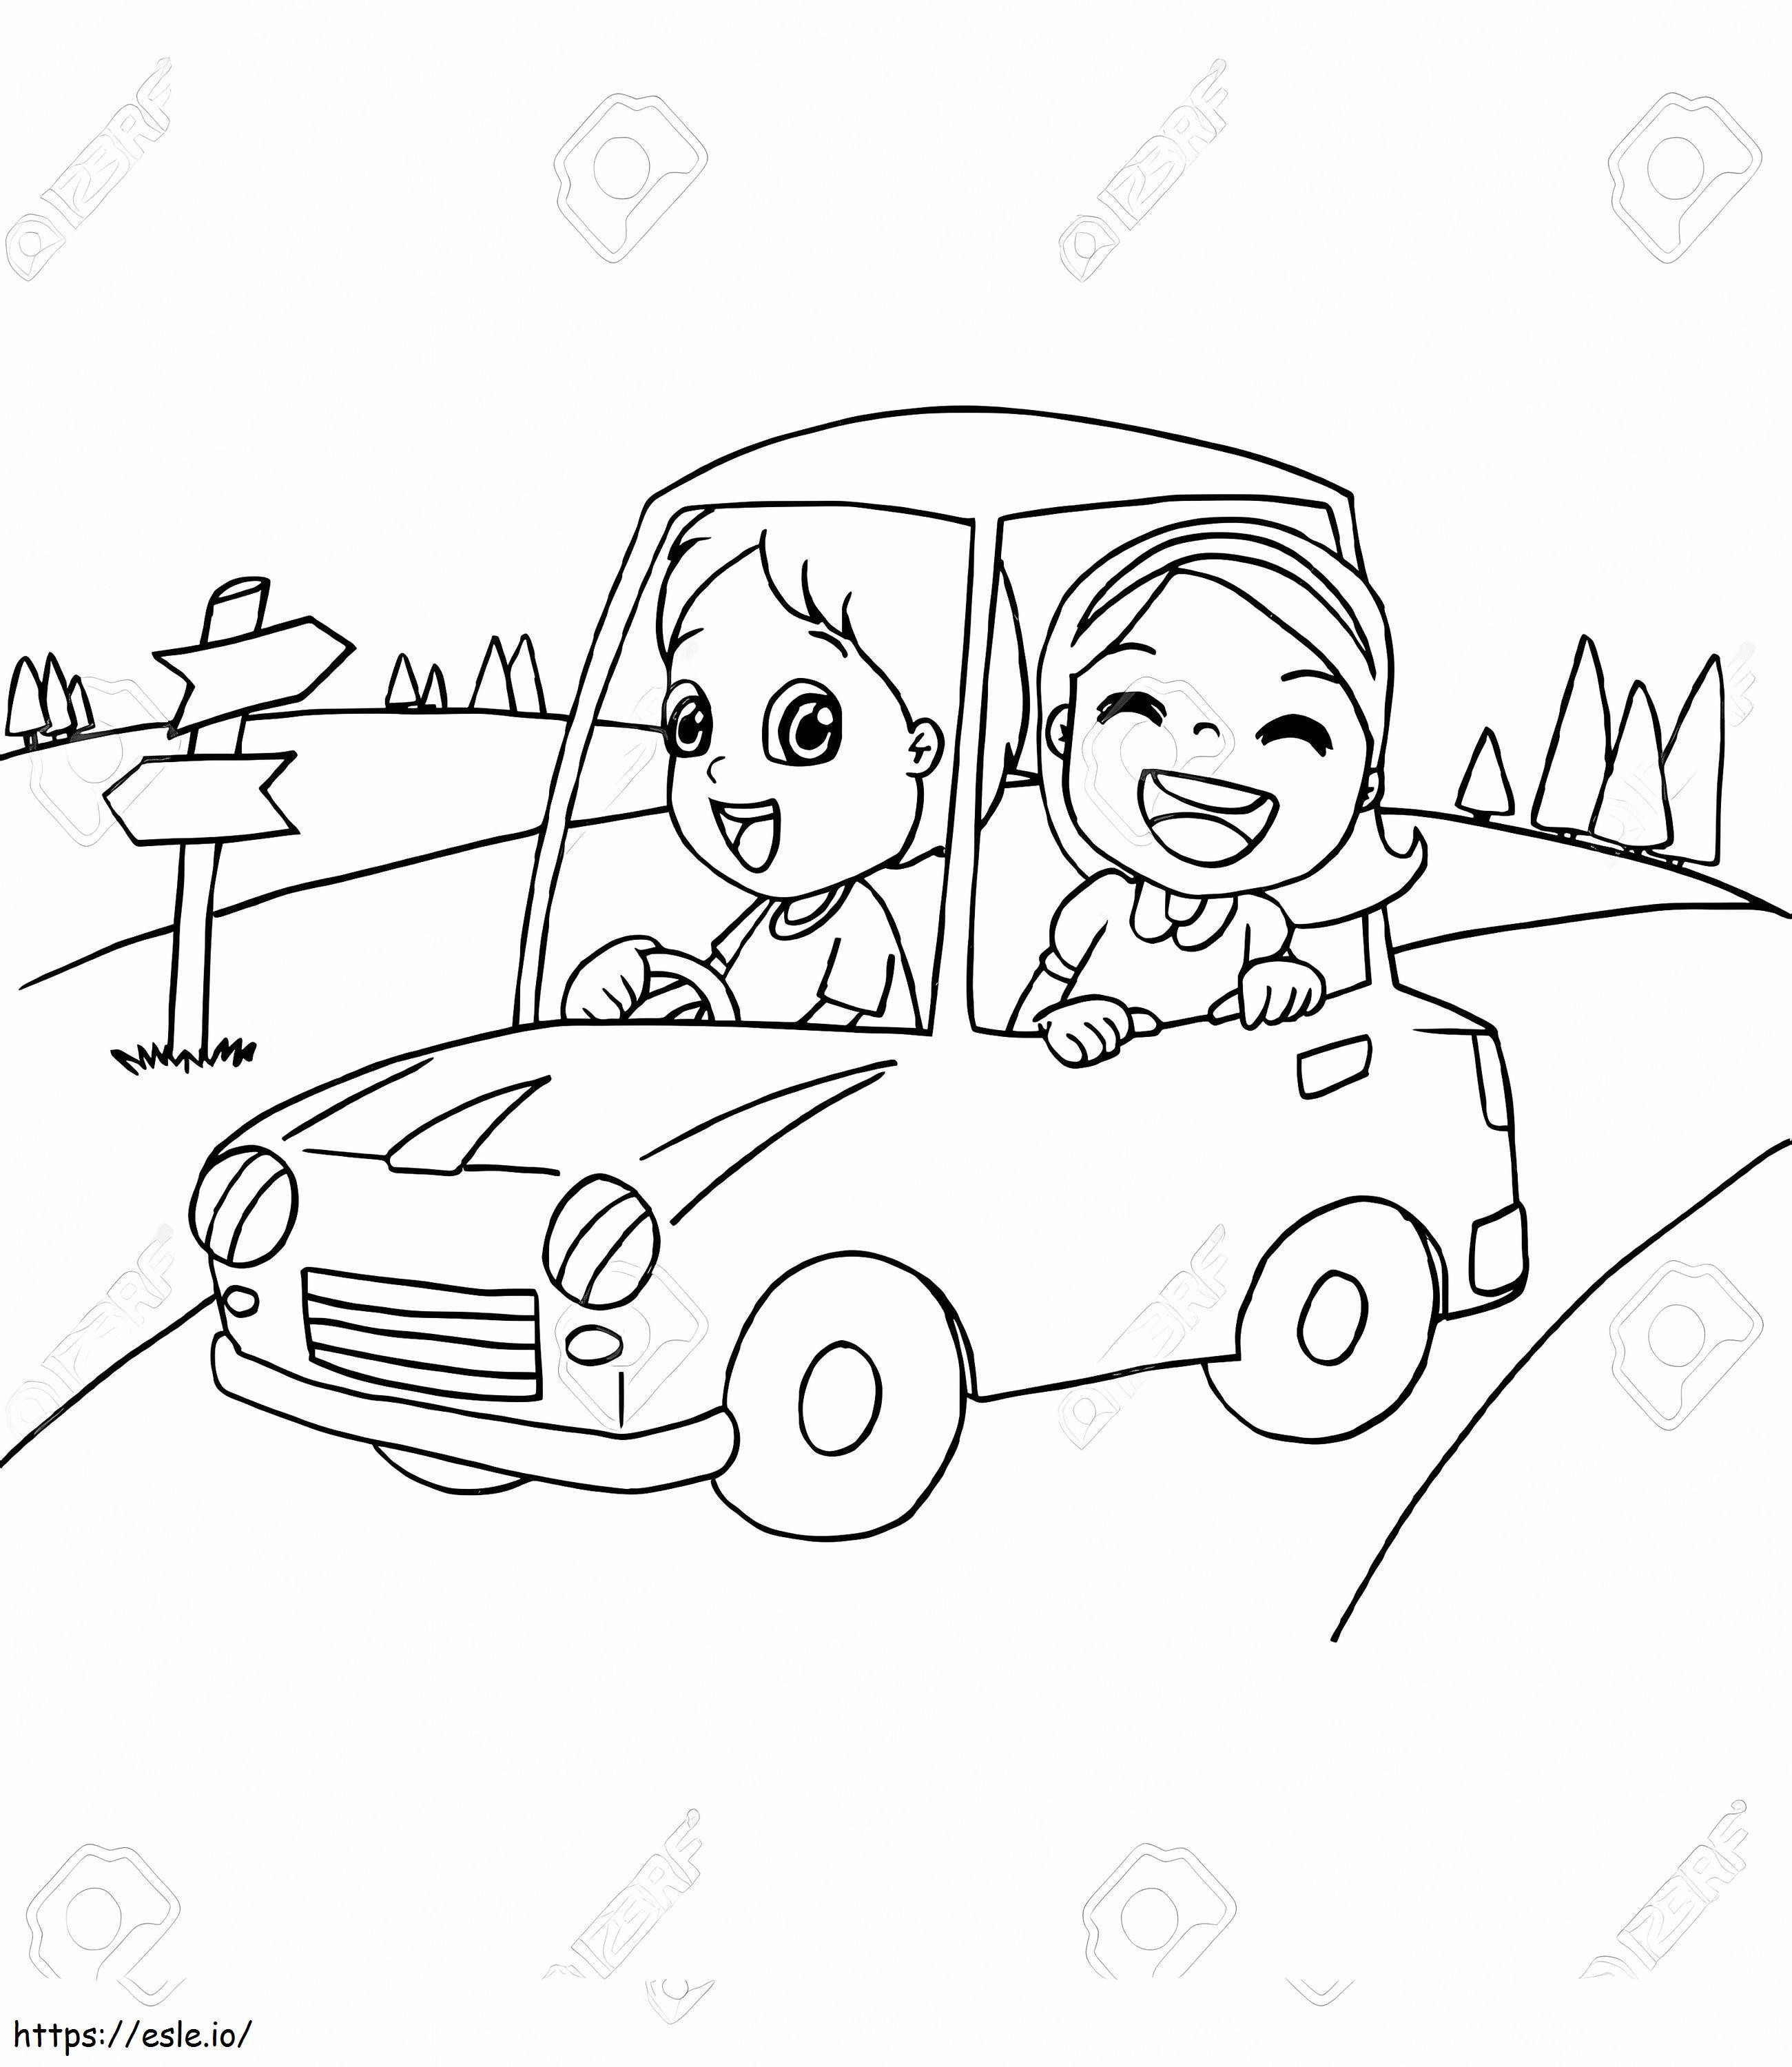 83072559 Imagem de um garotinho e um amigo dirigindo um carro de brinquedo vetor para colorir